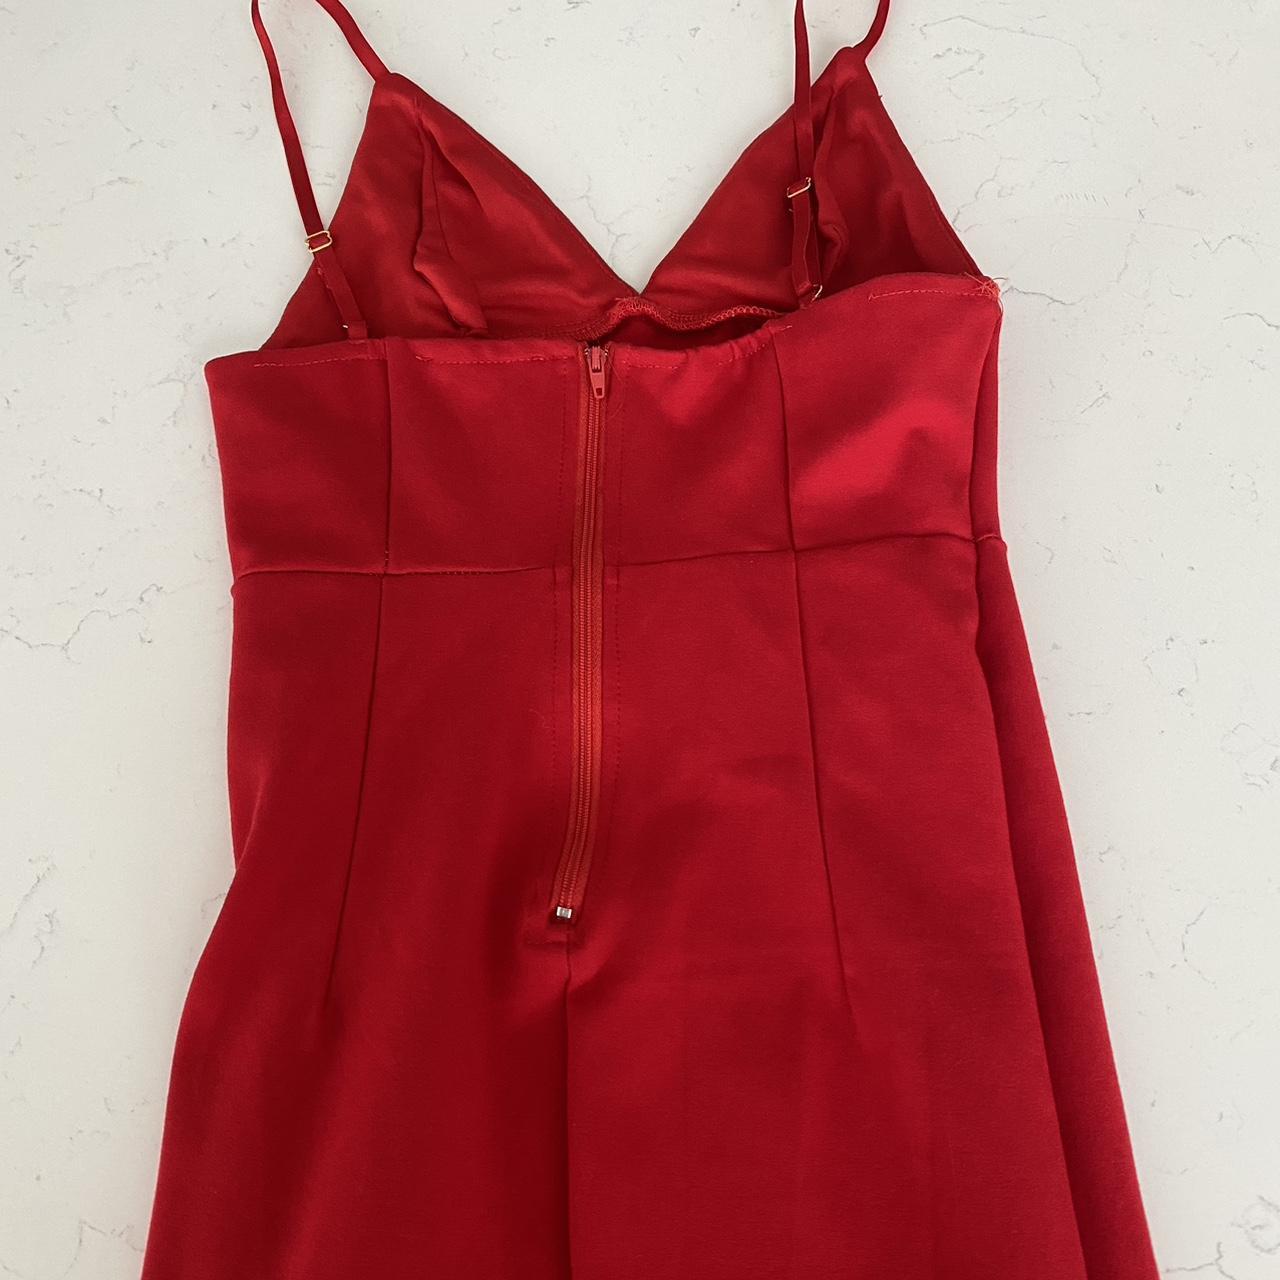 Red dress with slit on leg zipper back 🛑 depop... - Depop